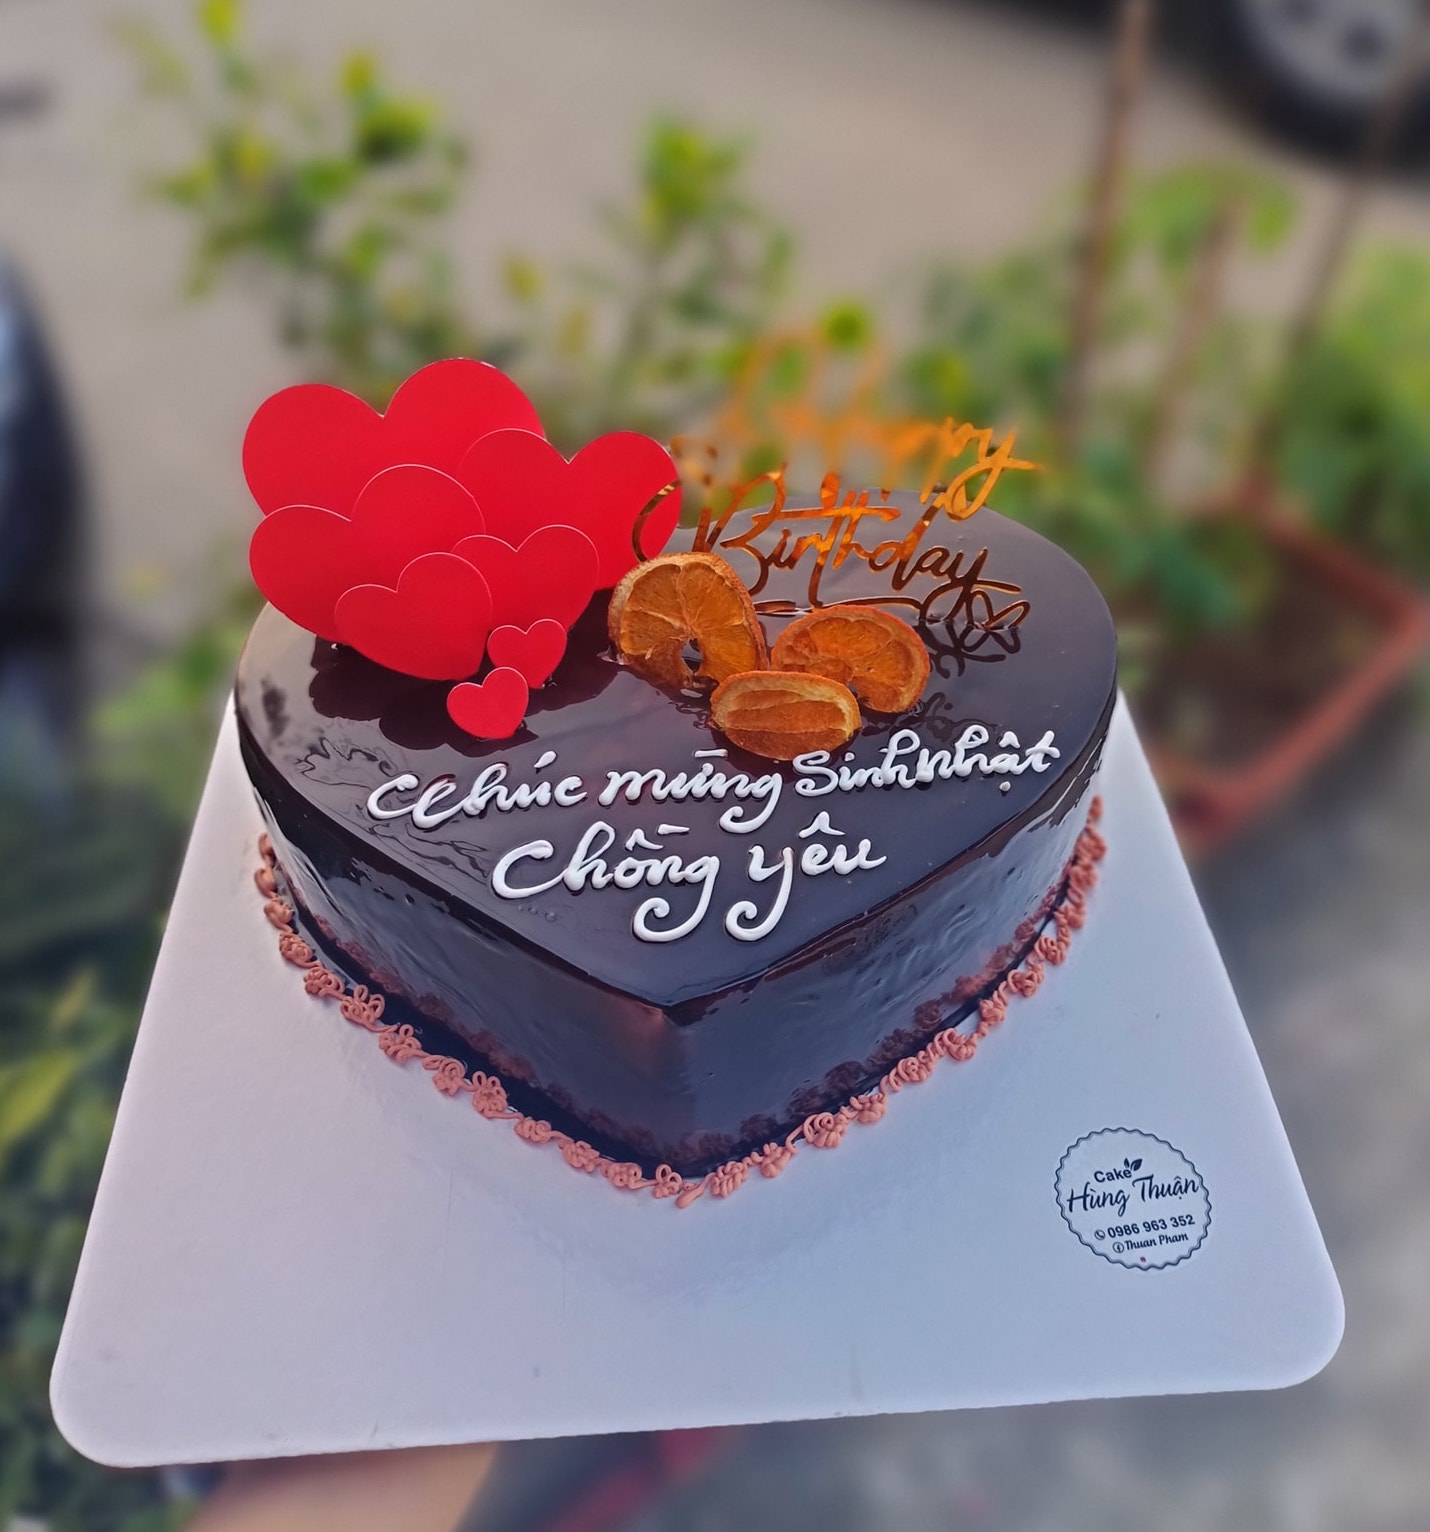 Bánh kem sinh nhật trái tim đỏ lãng mạn tặng chồng yêu  Bánh Thiên Thần   Chuyên nhận đặt bánh sinh nhật theo mẫu